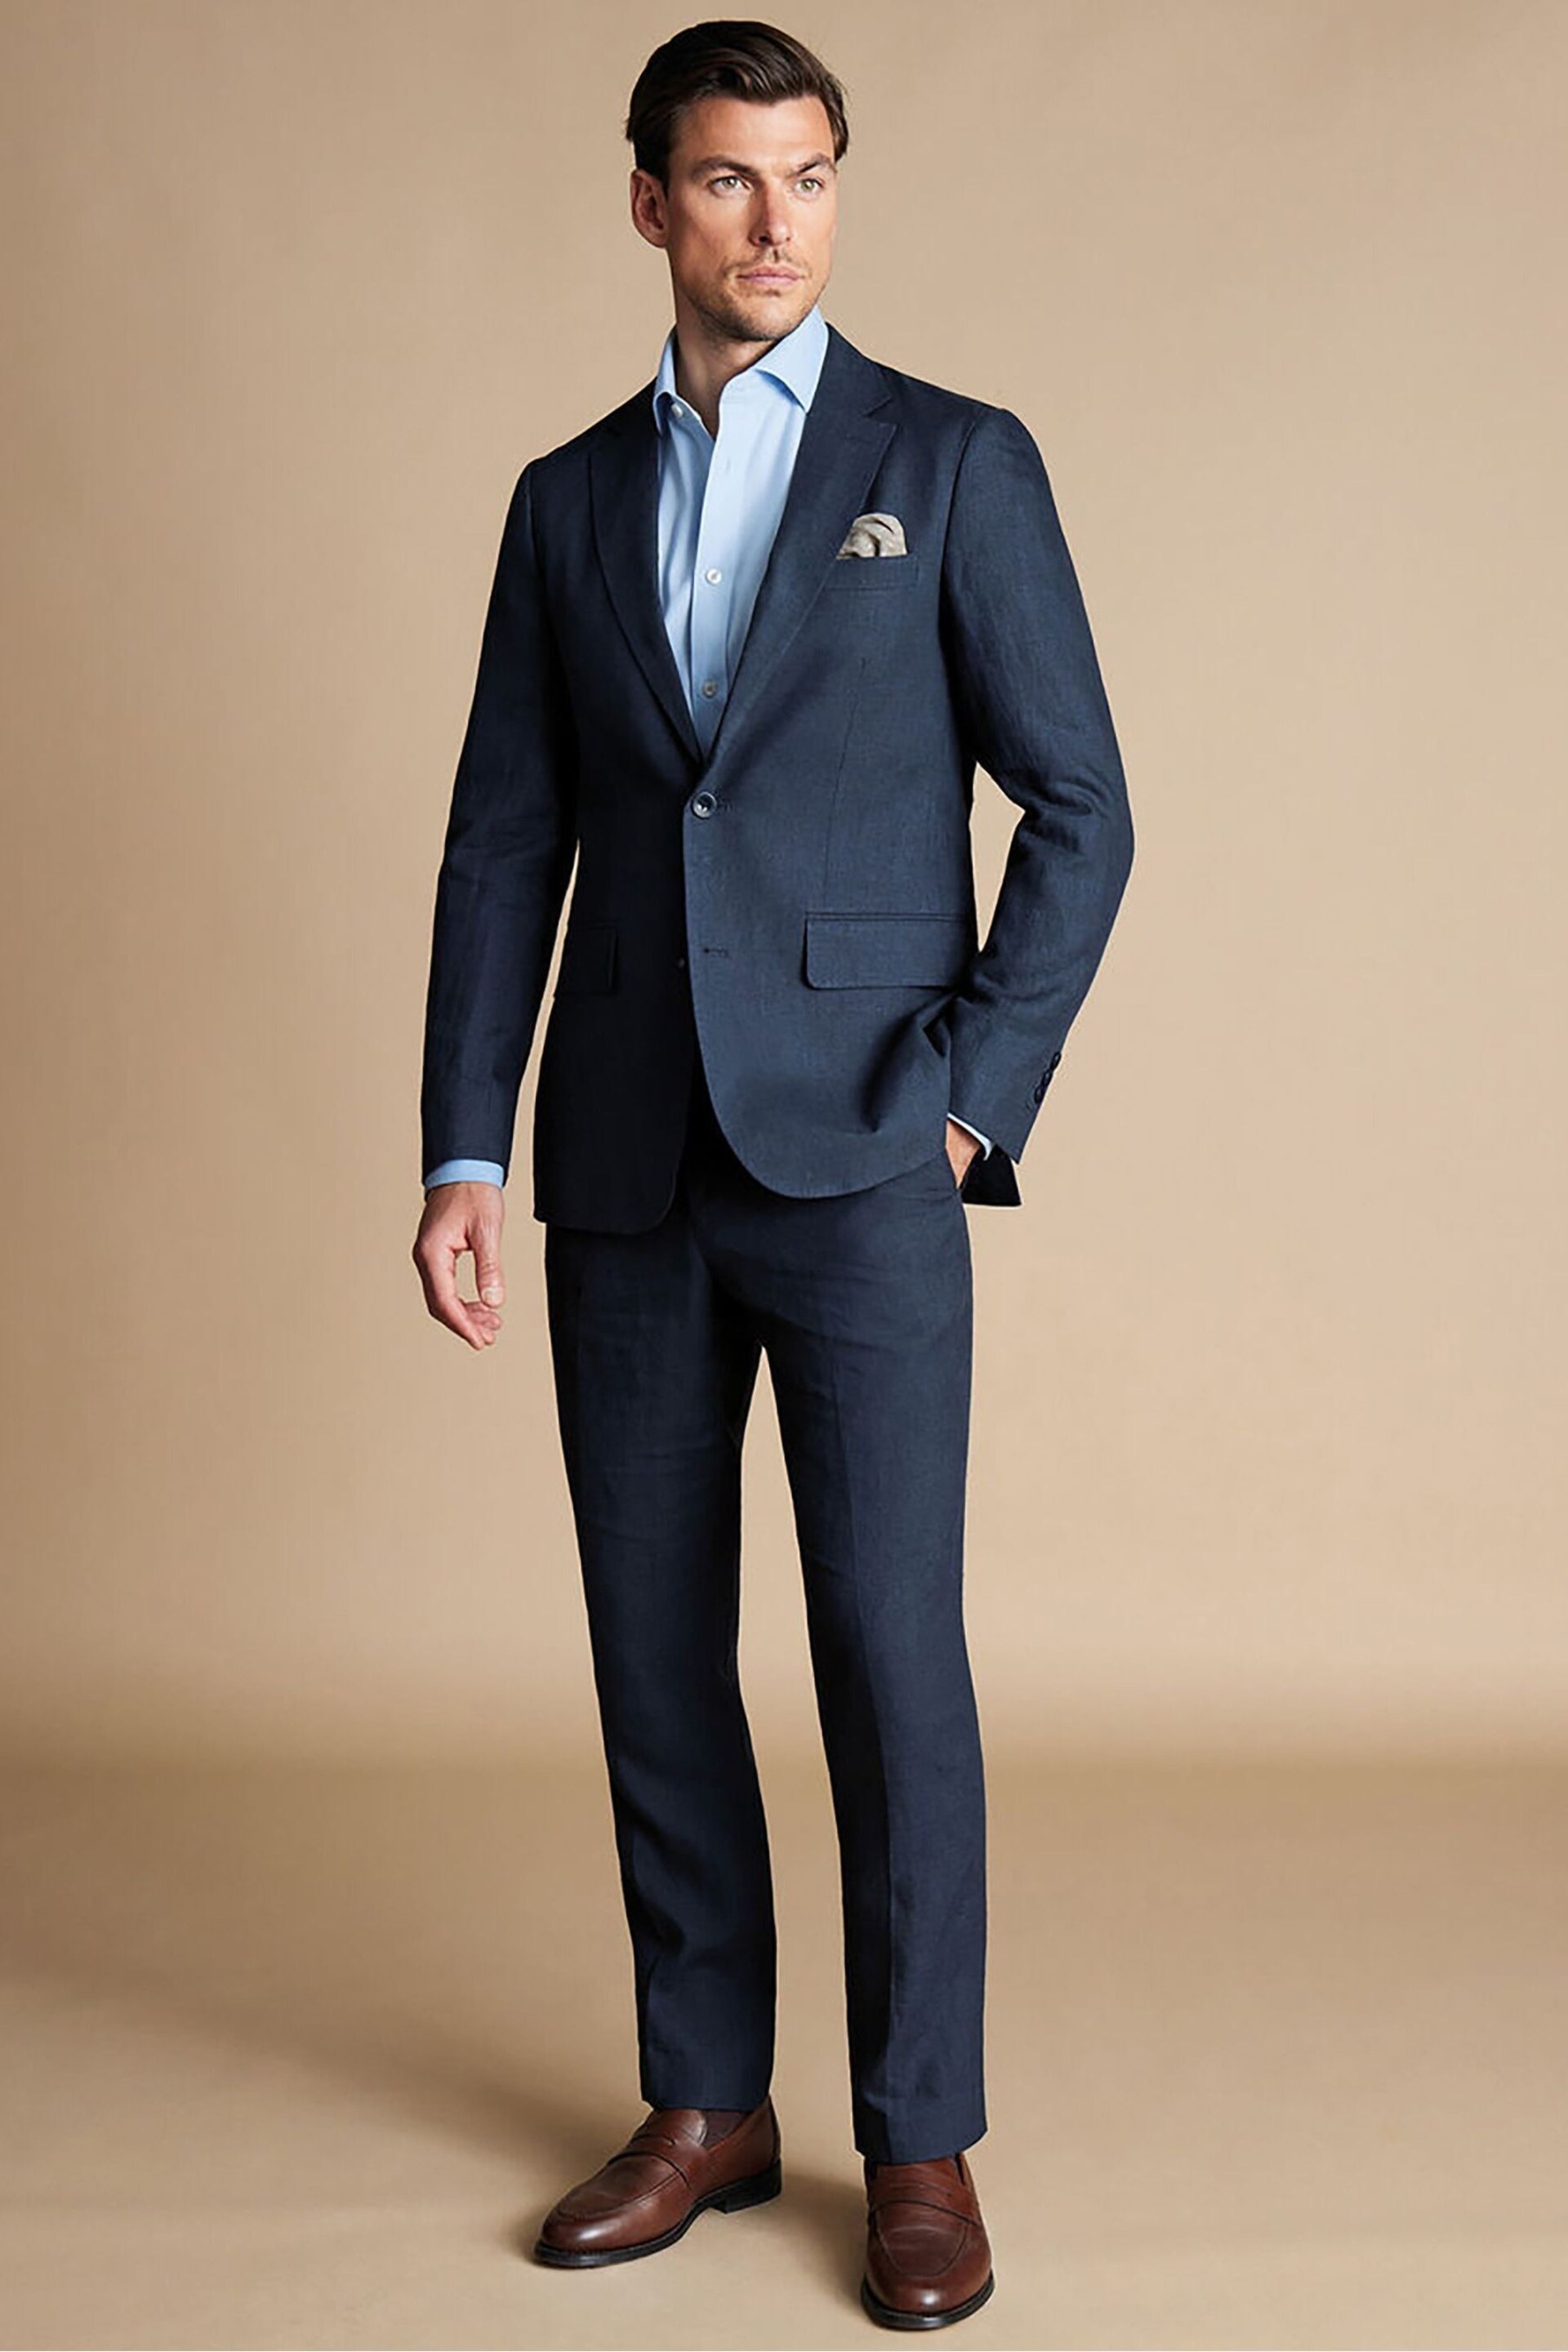 Charles Tyrwhitt Blue Linen Slim Fit Jacket - Image 3 of 5